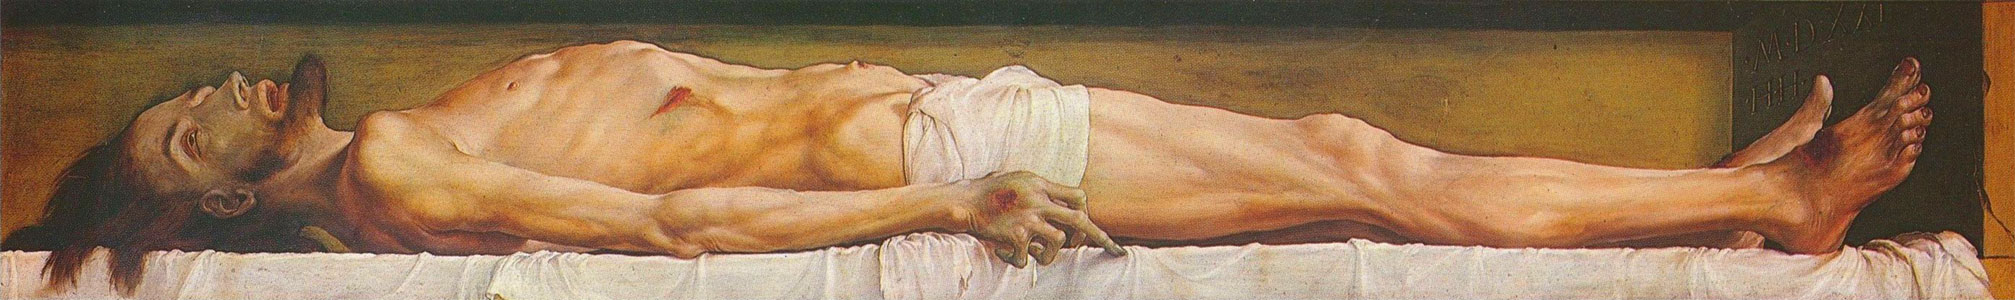 Corpo di Cristo morto nella tomba - Holbein